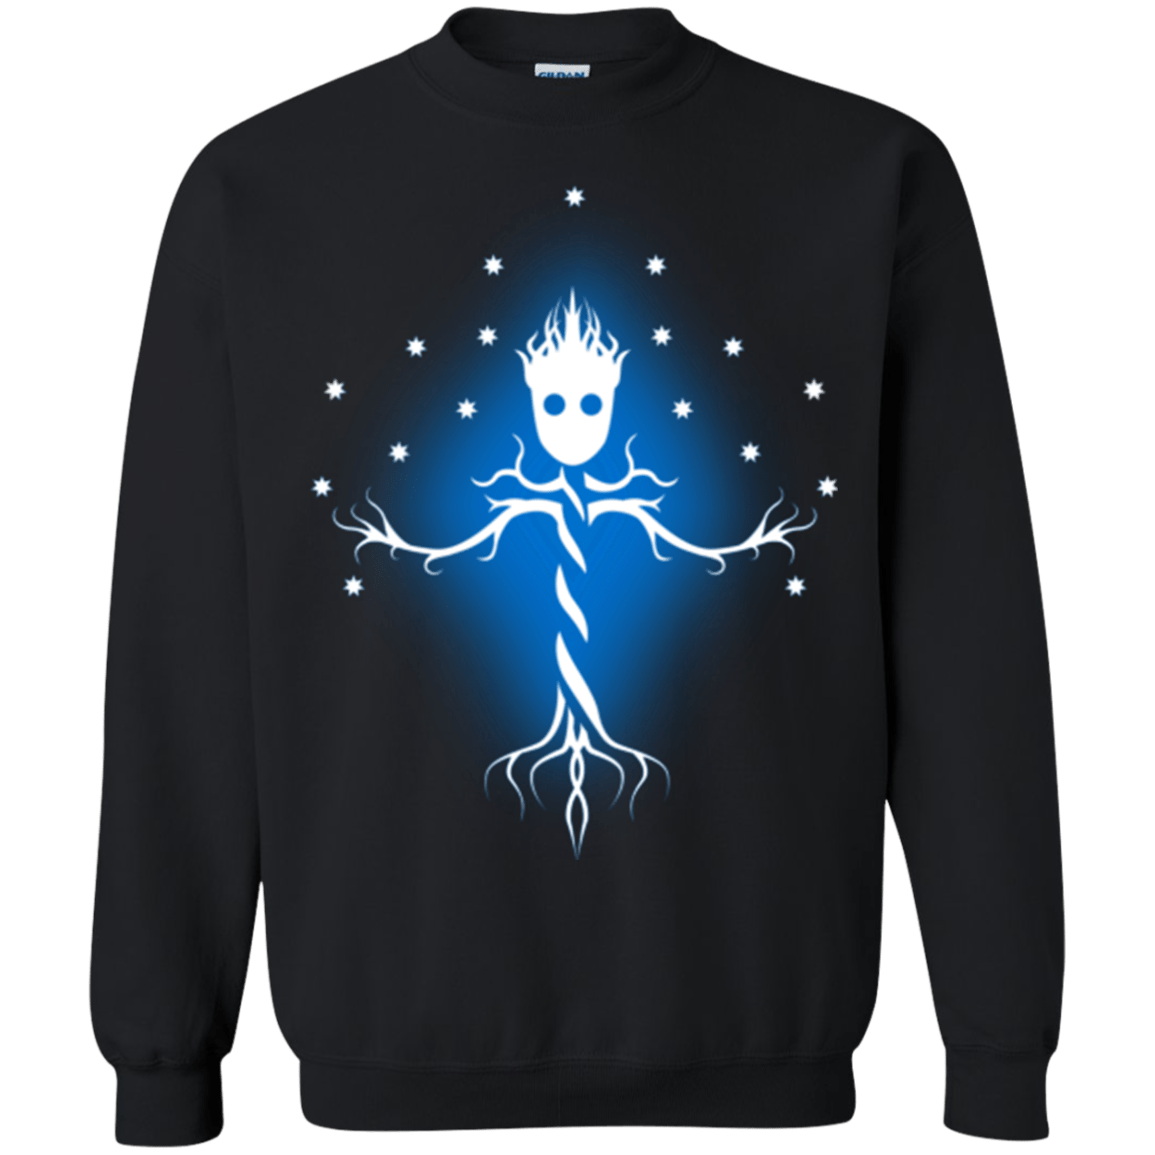 Sweatshirts Black / Small Guardian Tree of The Galaxy Crewneck Sweatshirt